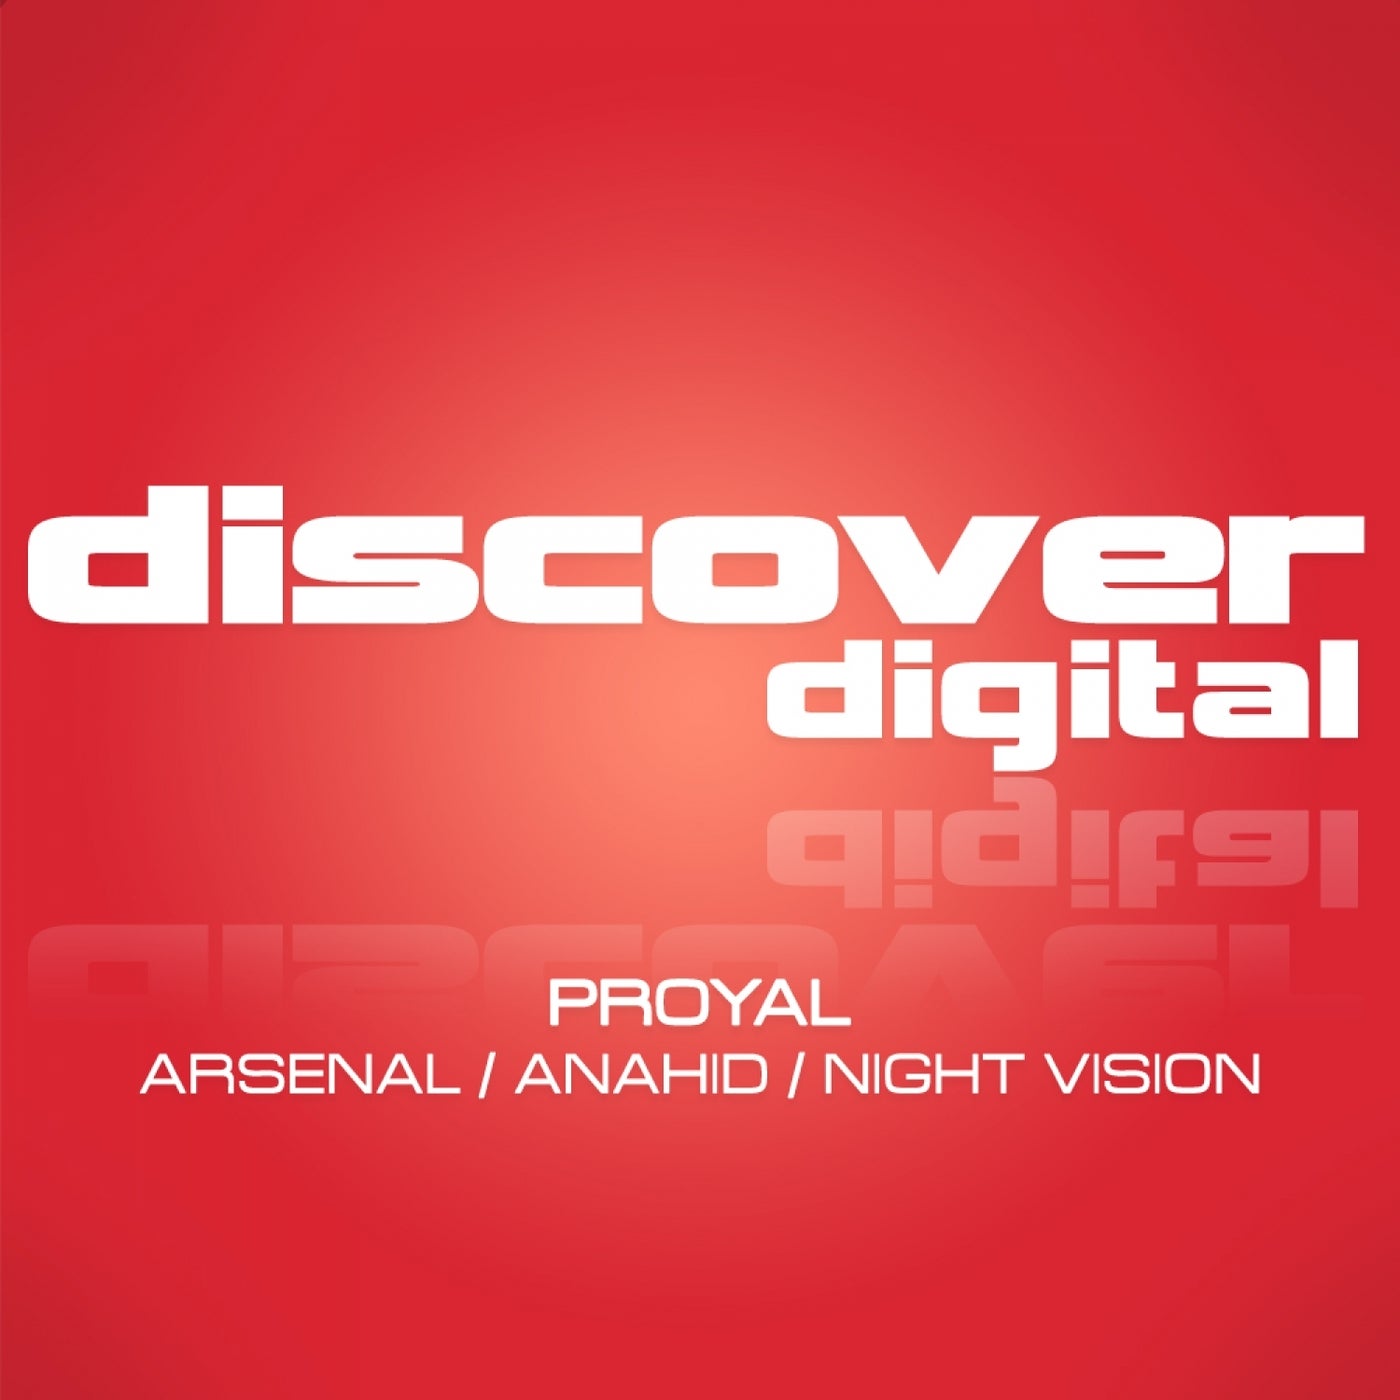 Arsenal / Anahid / Night Vision